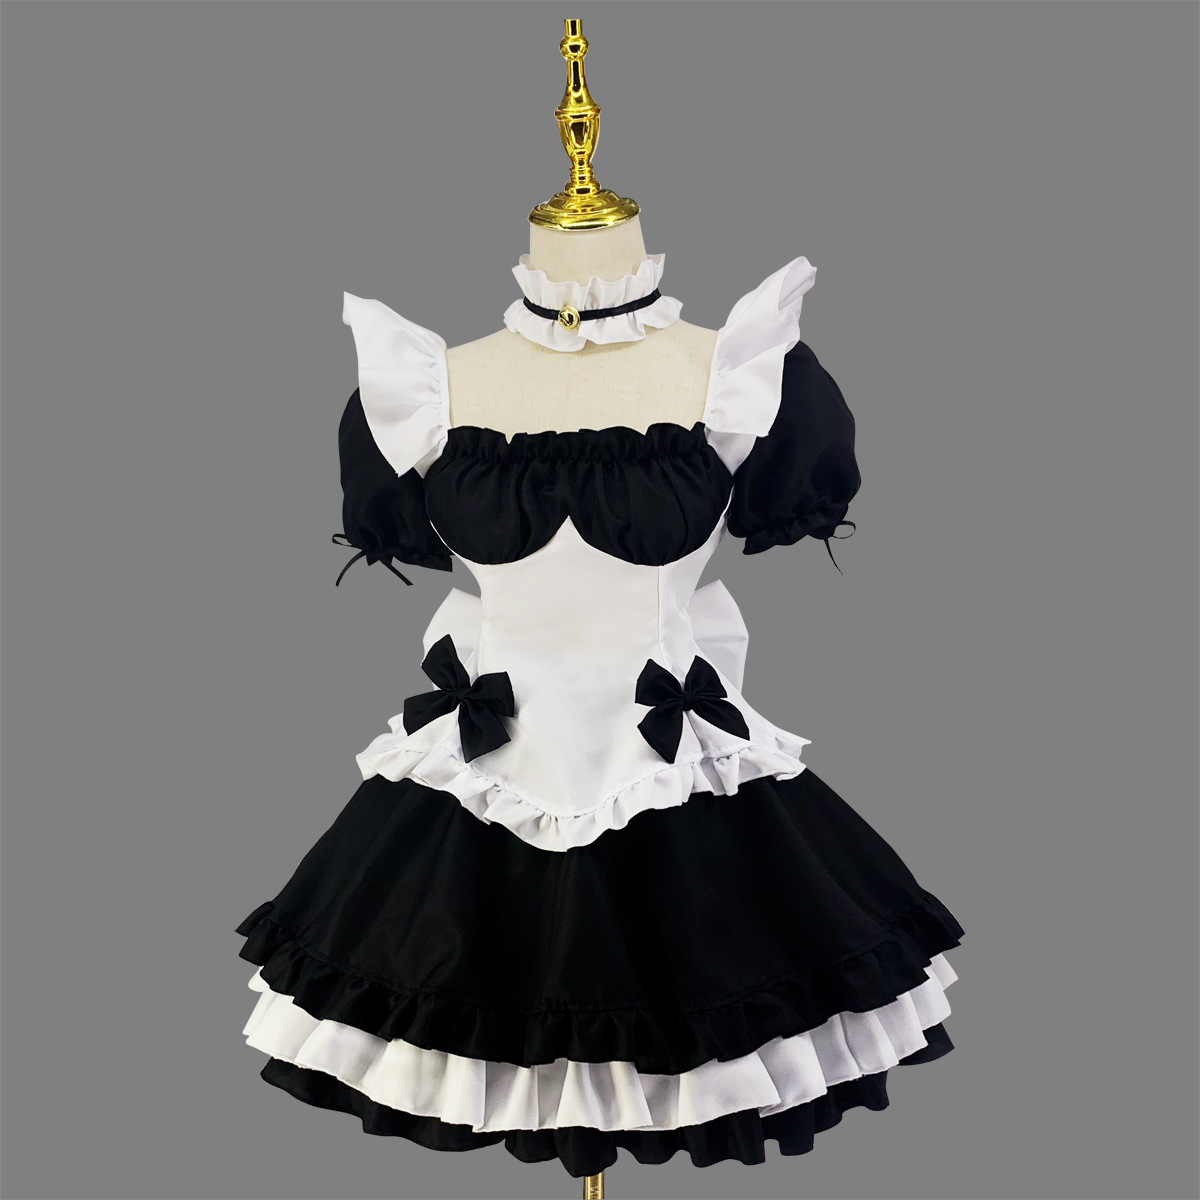 游戏服装 cosplay软妹 奇迹暖暖 黑白巧克力女仆装 lolita公主裙